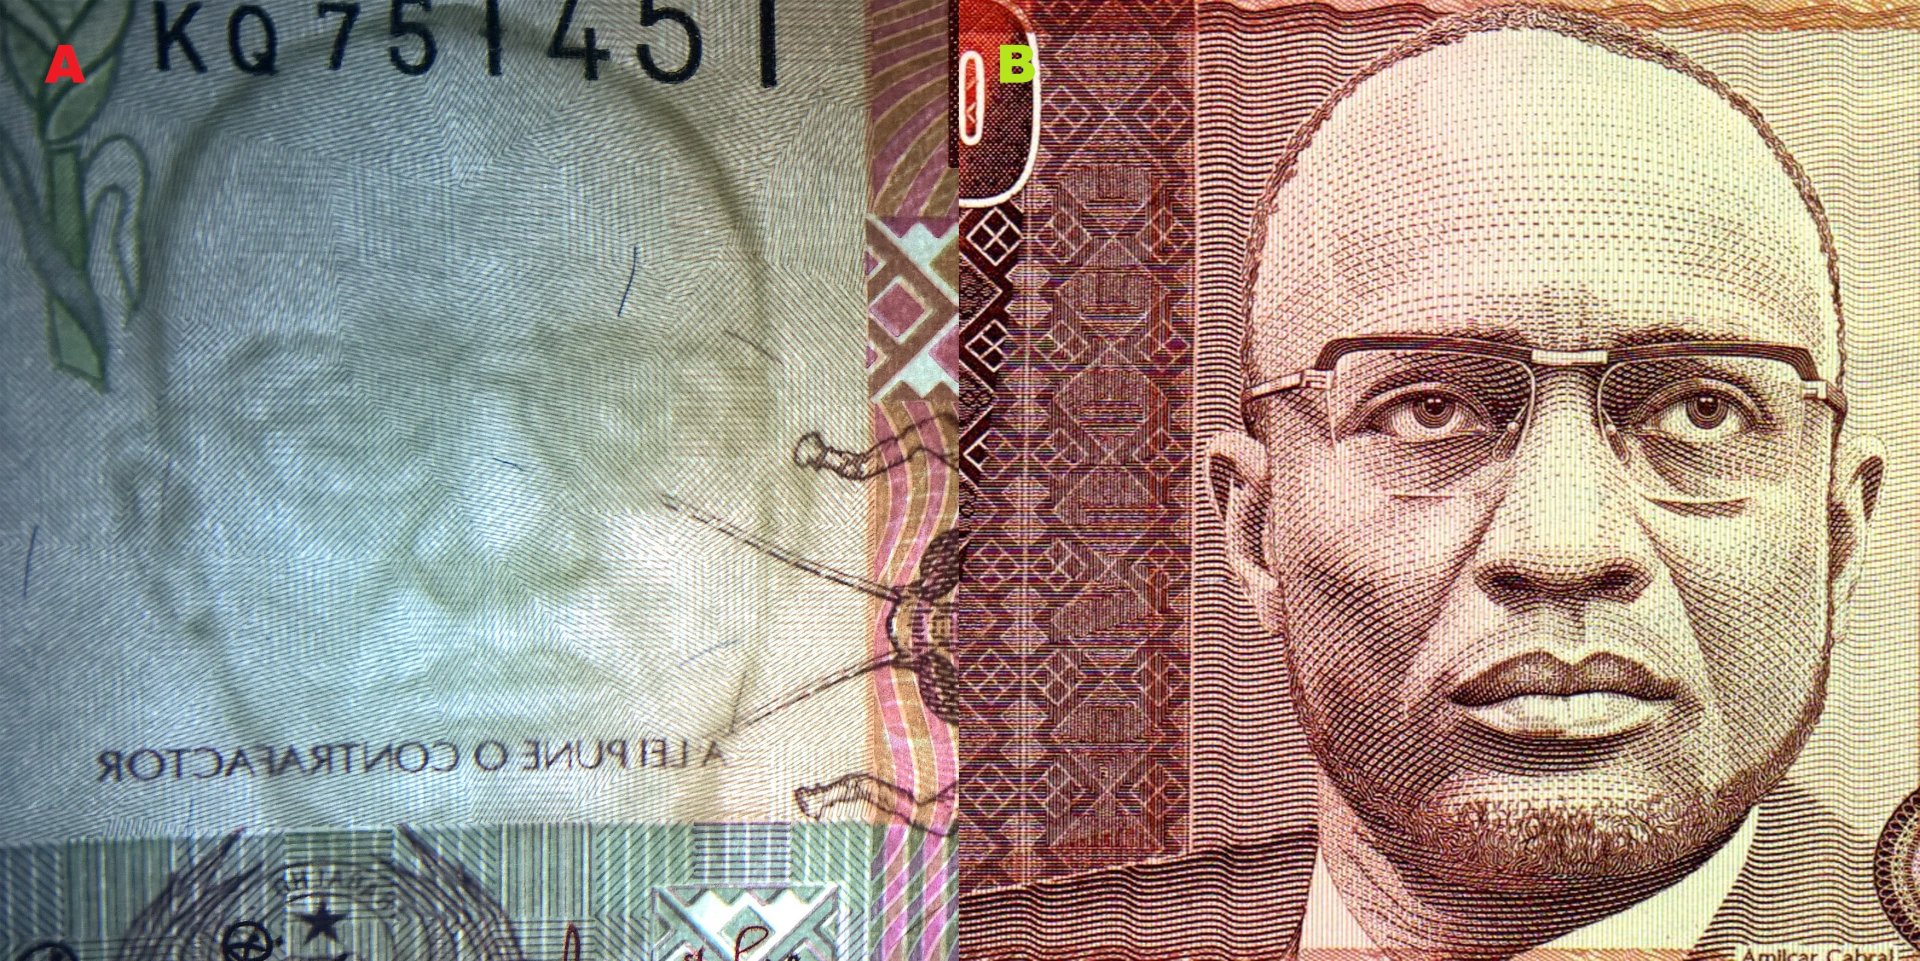 Obr. 2. A) Souhlasný tmavočarý vodotisk. B) portrét Amílcara Cabrala na bankovce P#60